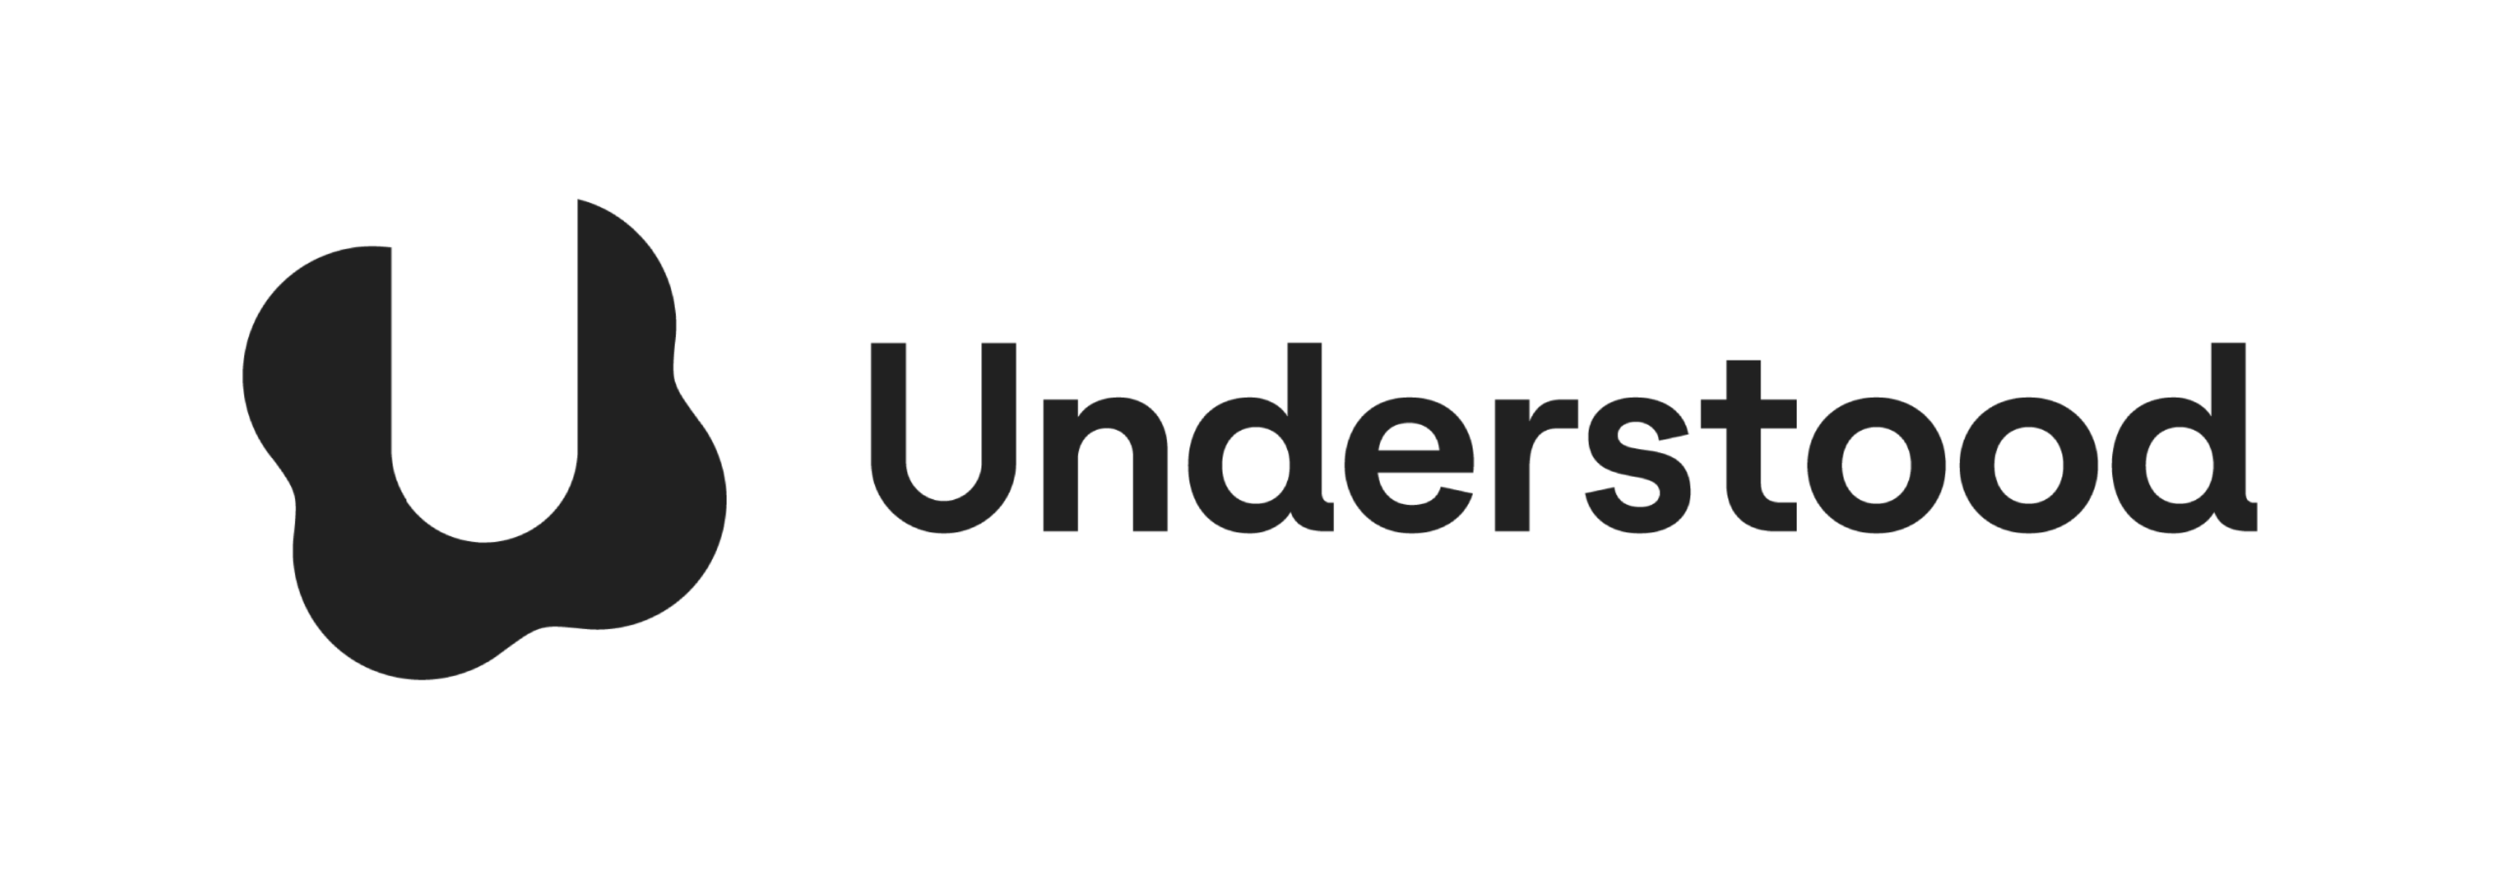 large_understood_logo-1.png